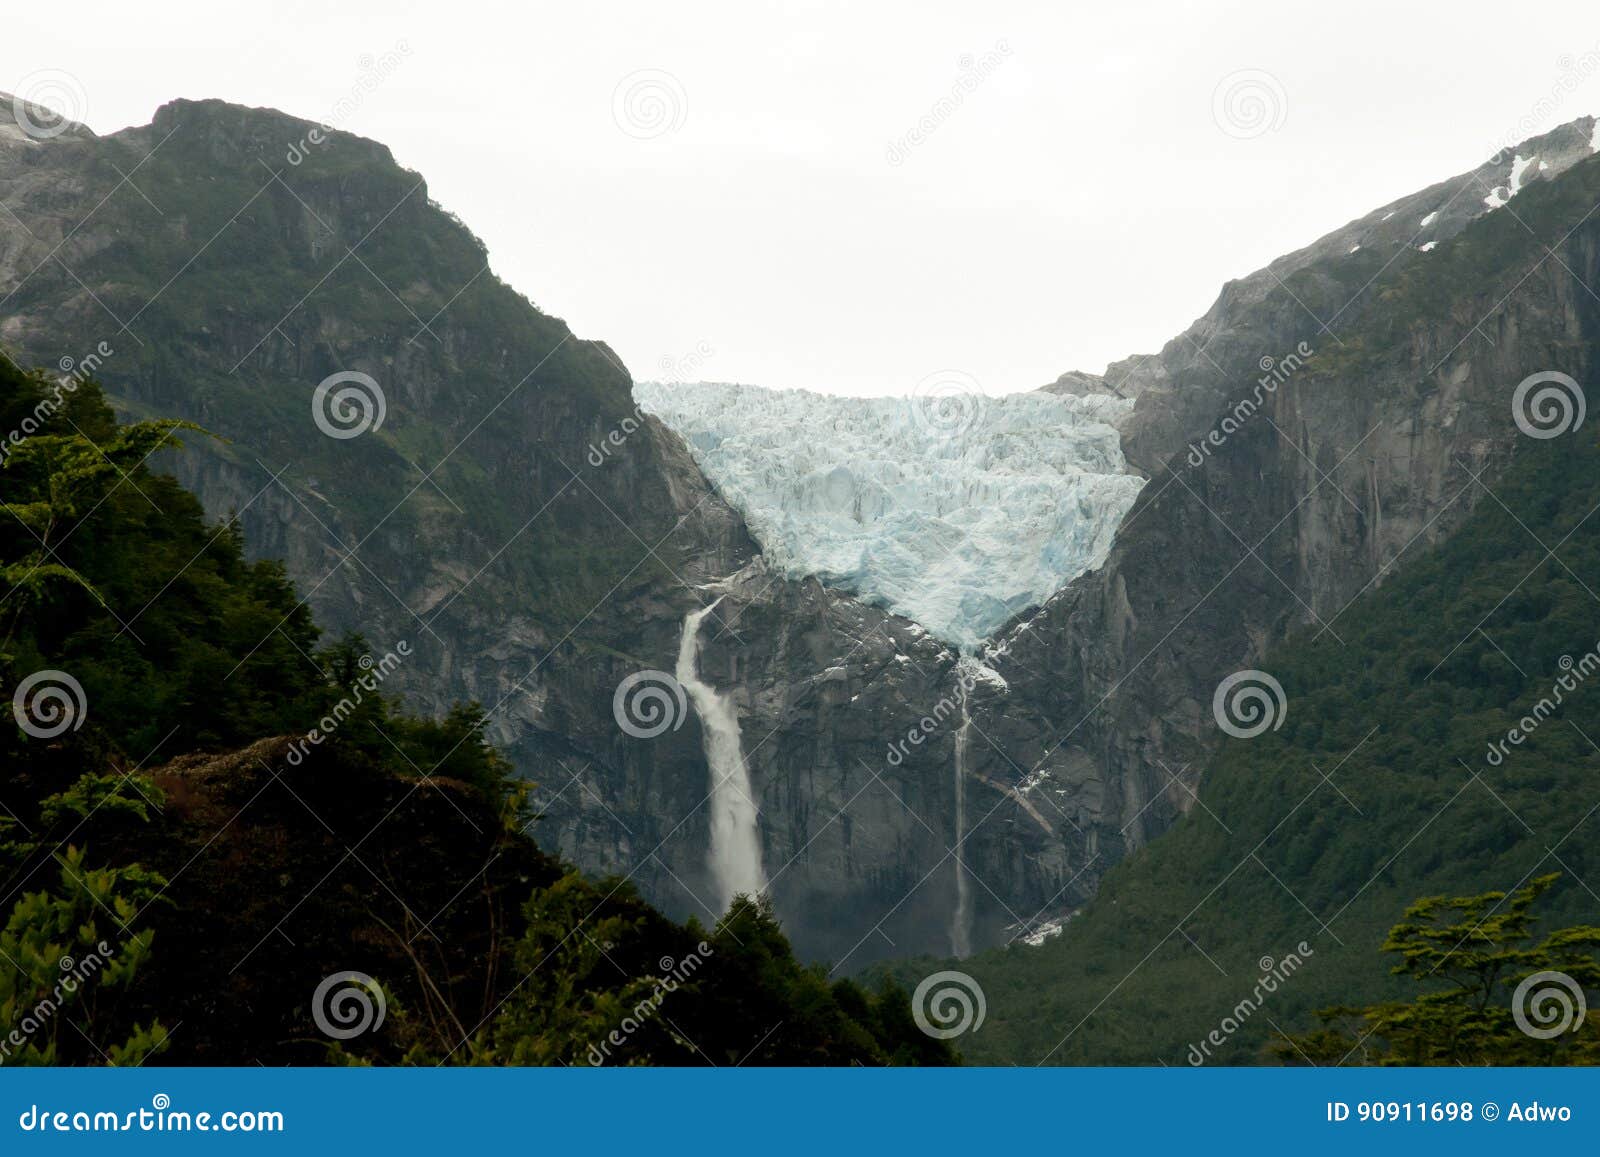 hanging glacier - queulat national park - chile